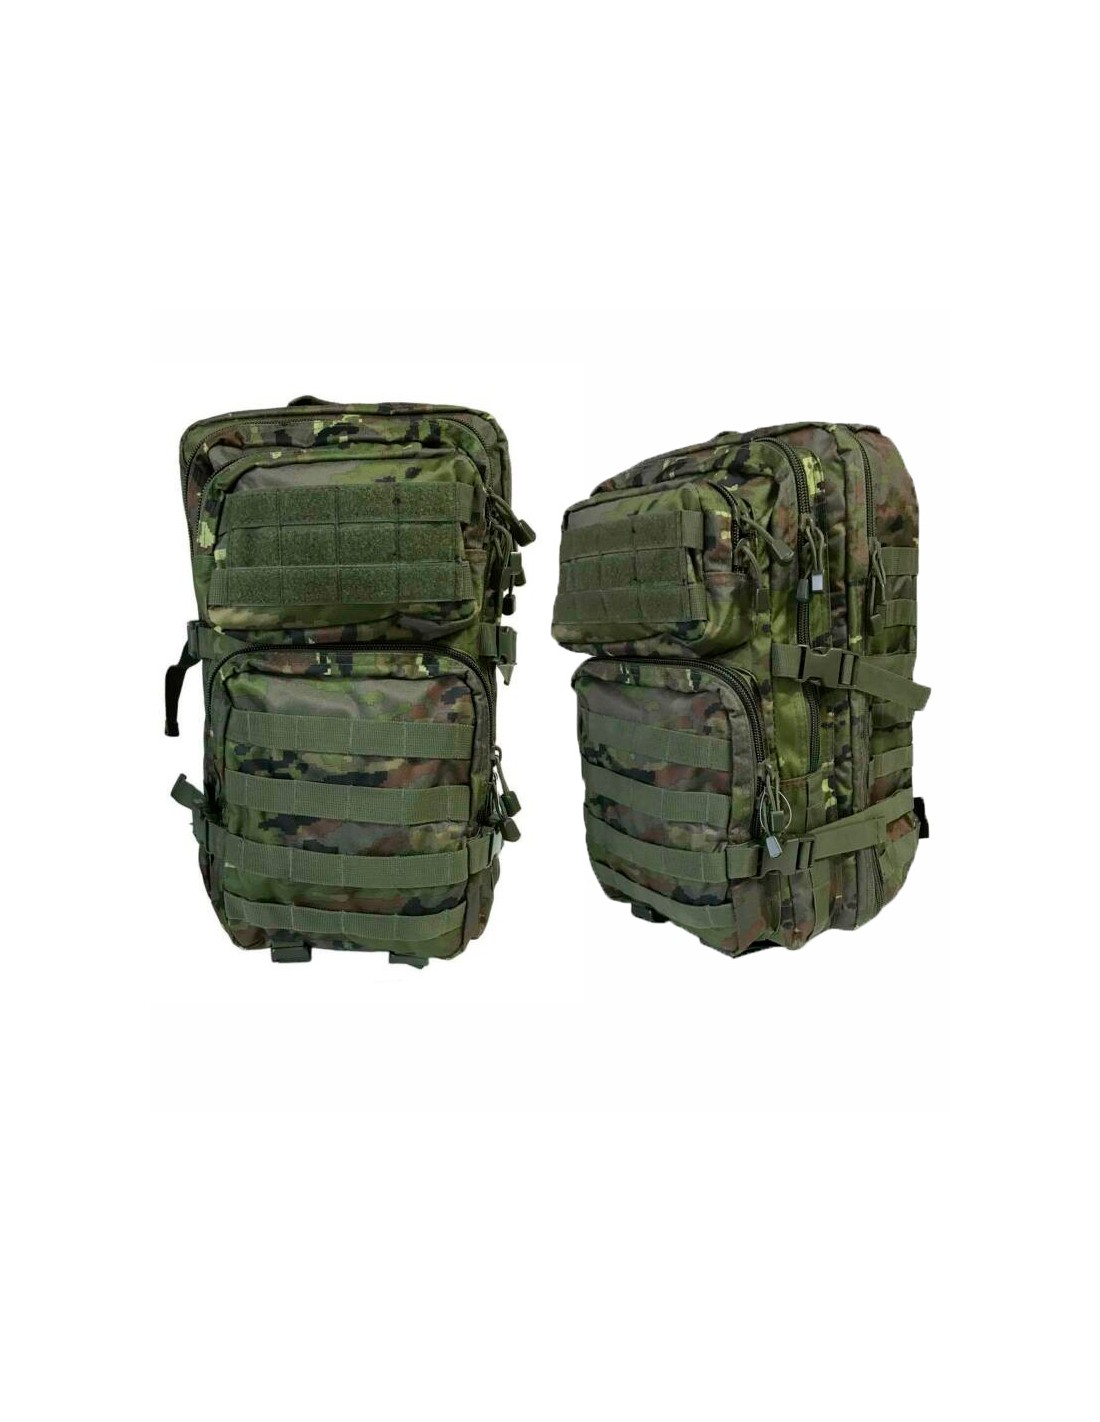 Tactical backpack 20 mochila tactica de 20 litros -Bergara